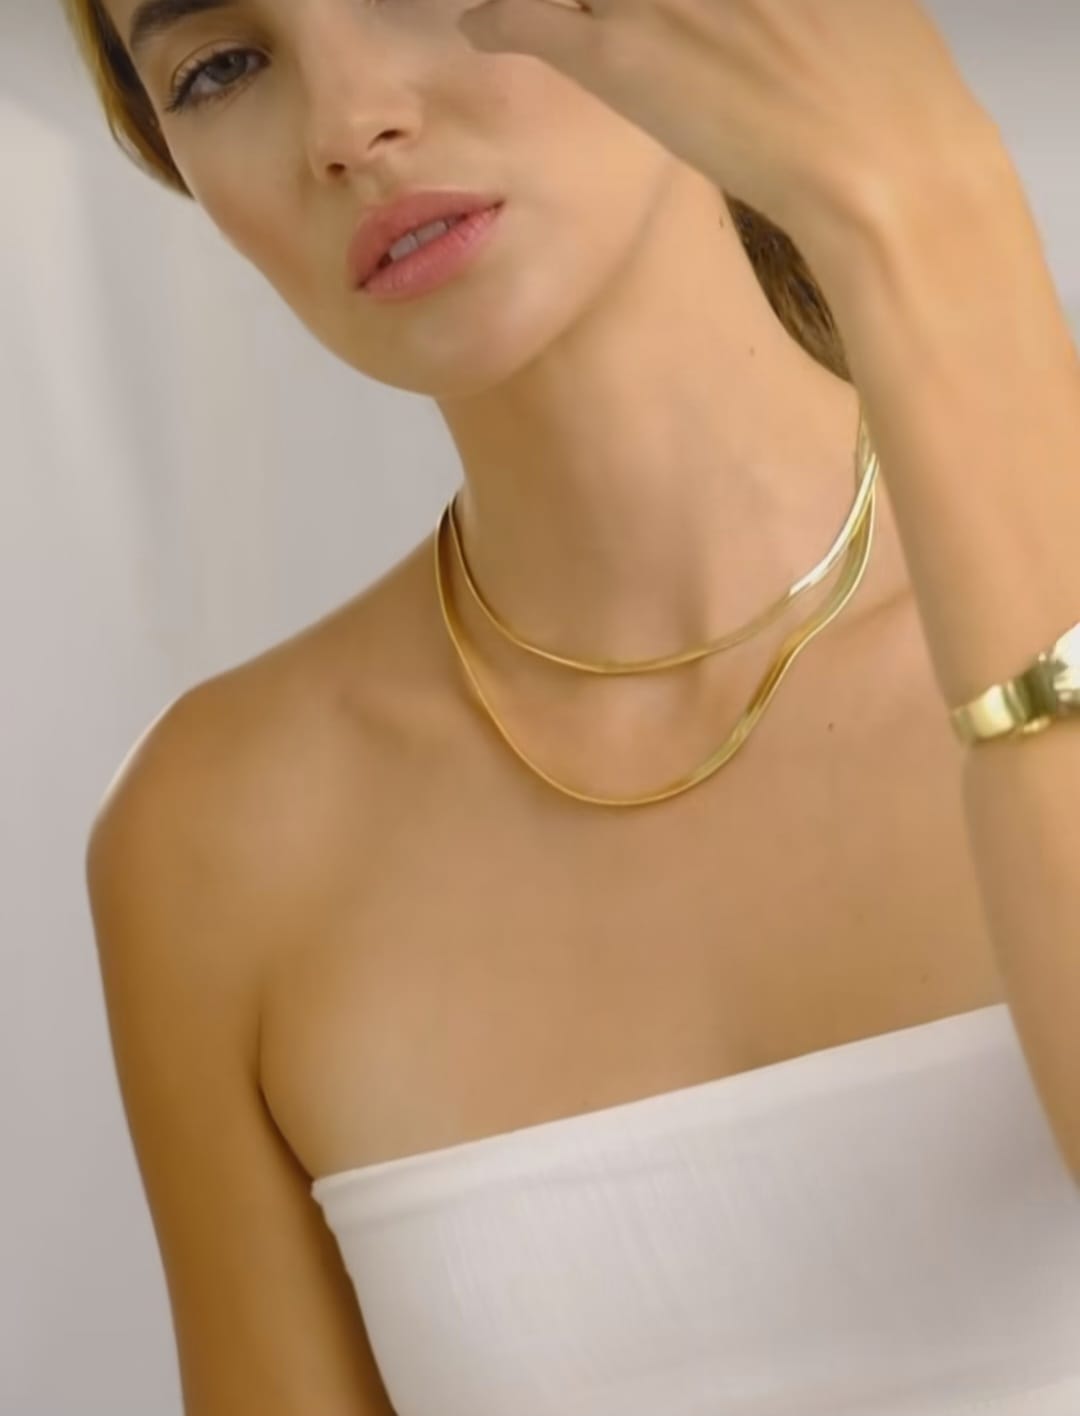 Collar Cadena Combinada Oro y Perlas Baño Oro 18k